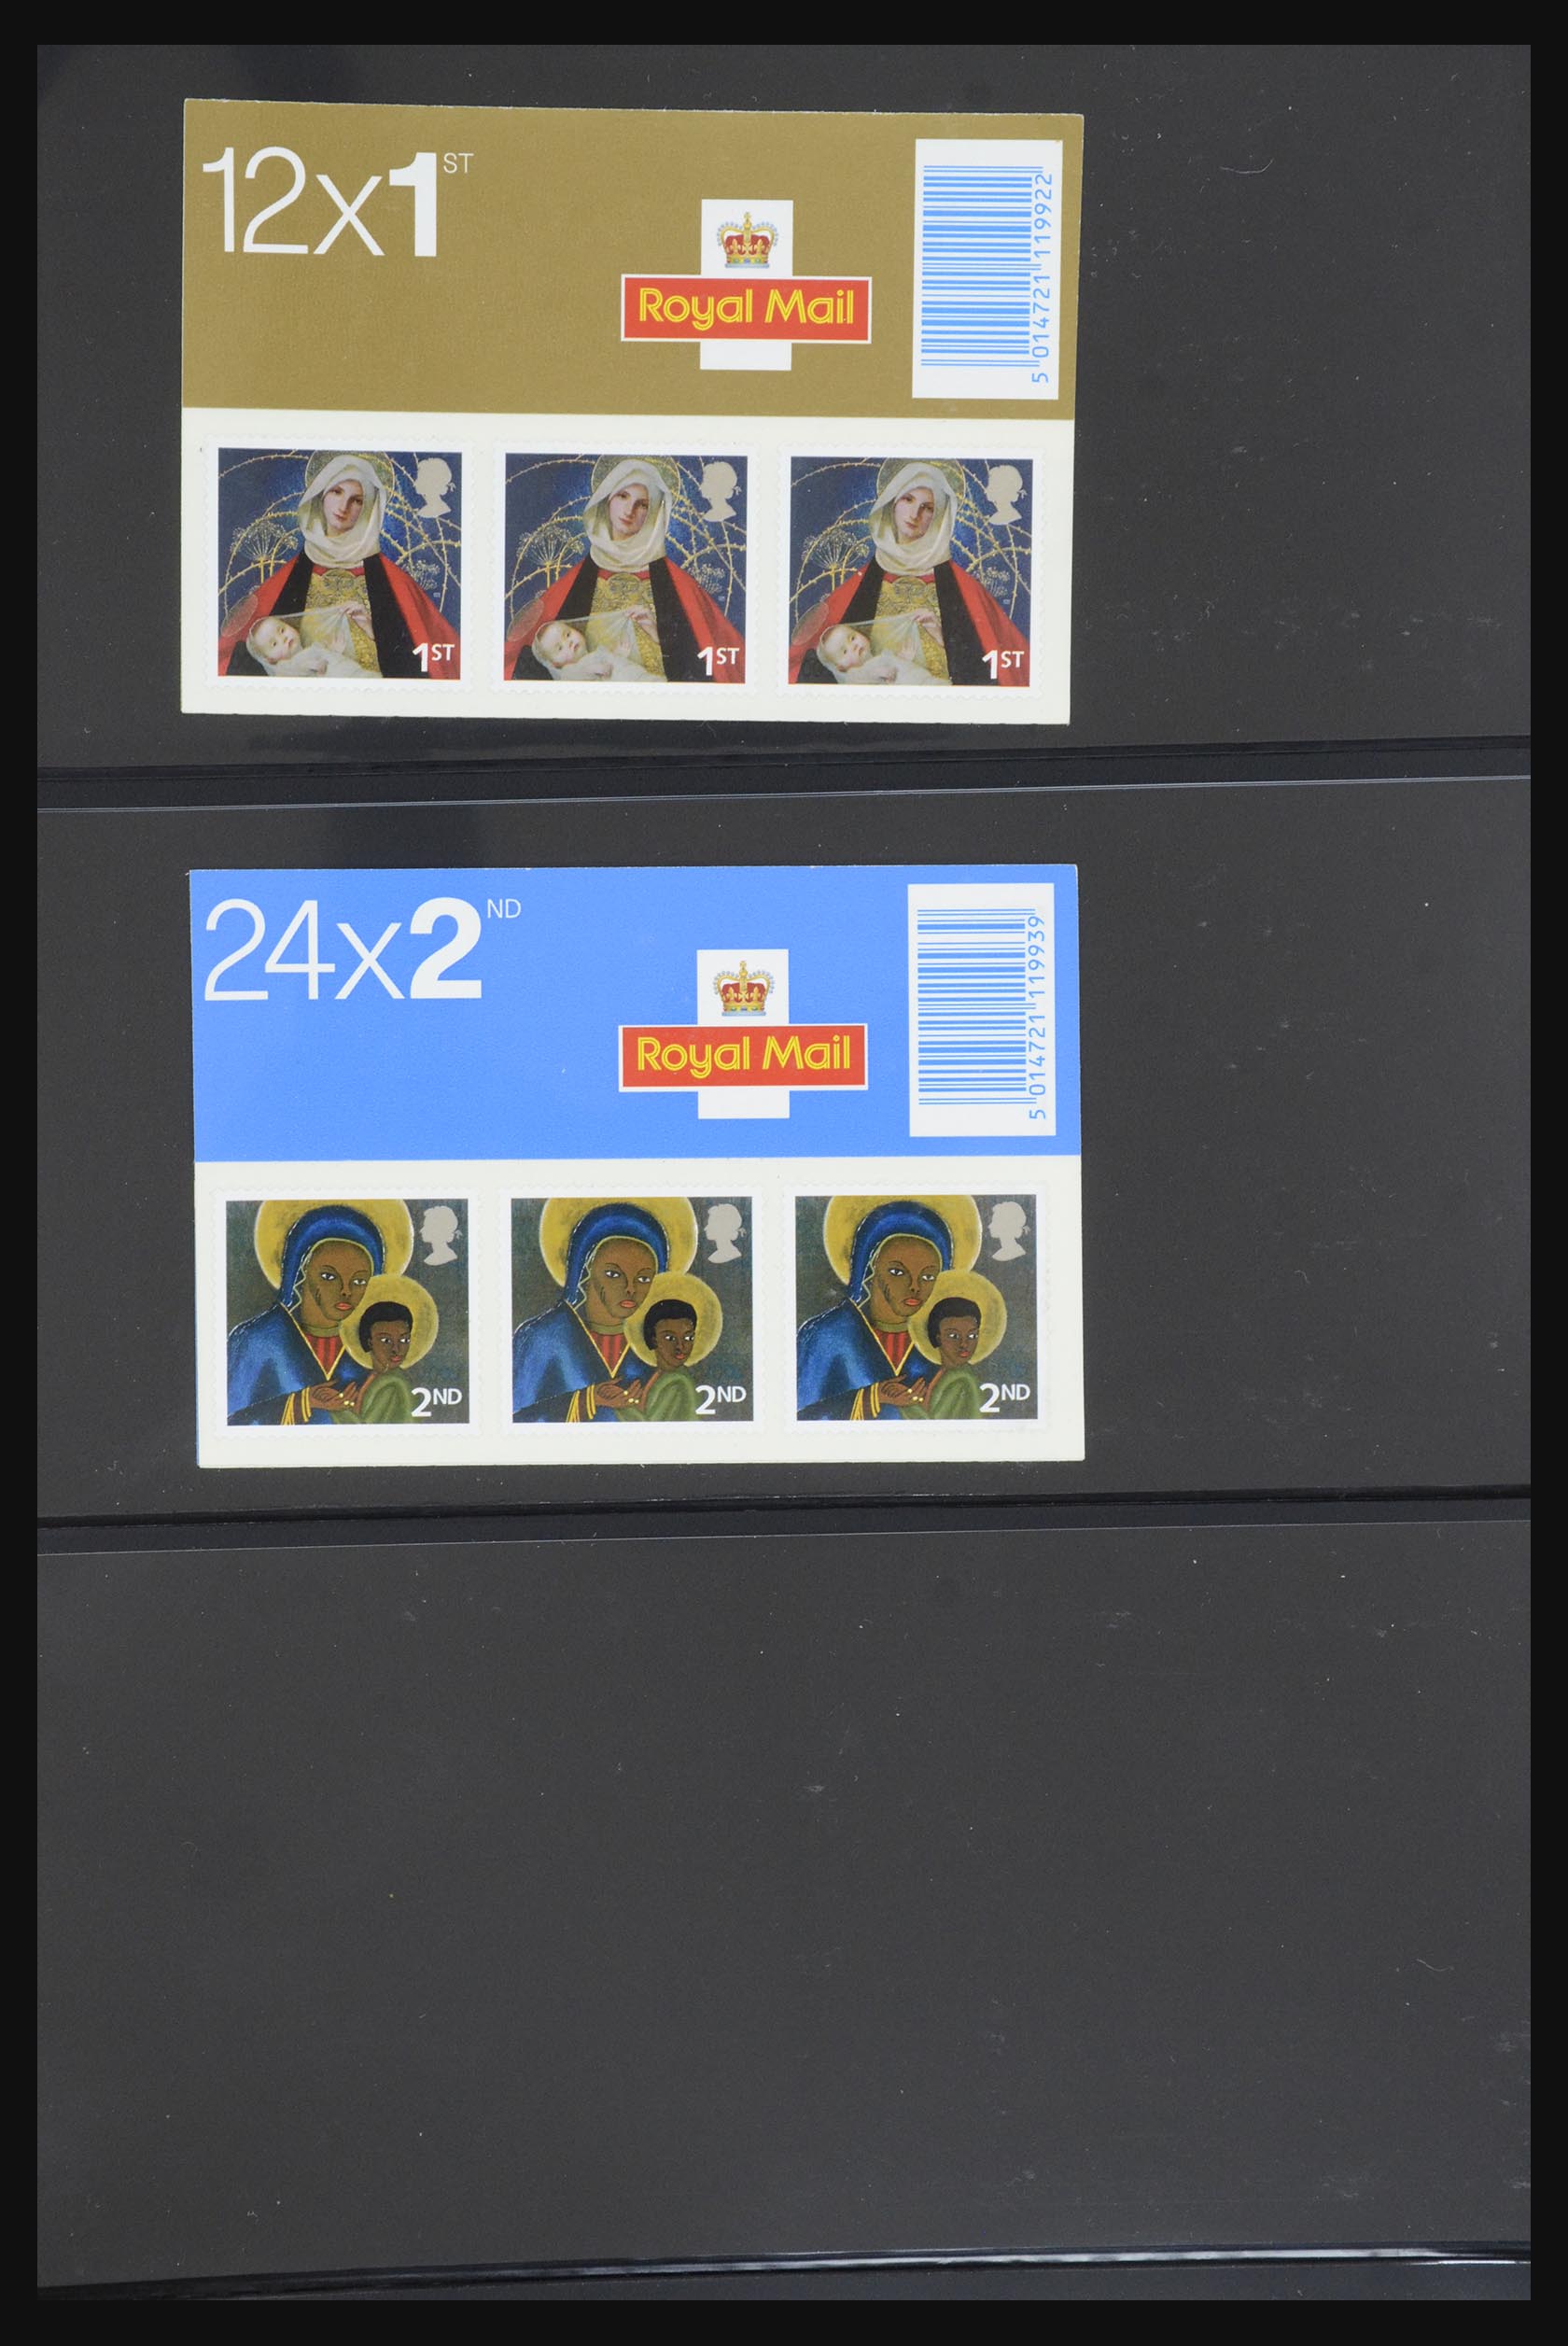 31959 316 - 31959 Engeland postzegelboekjes 1987-2016!!